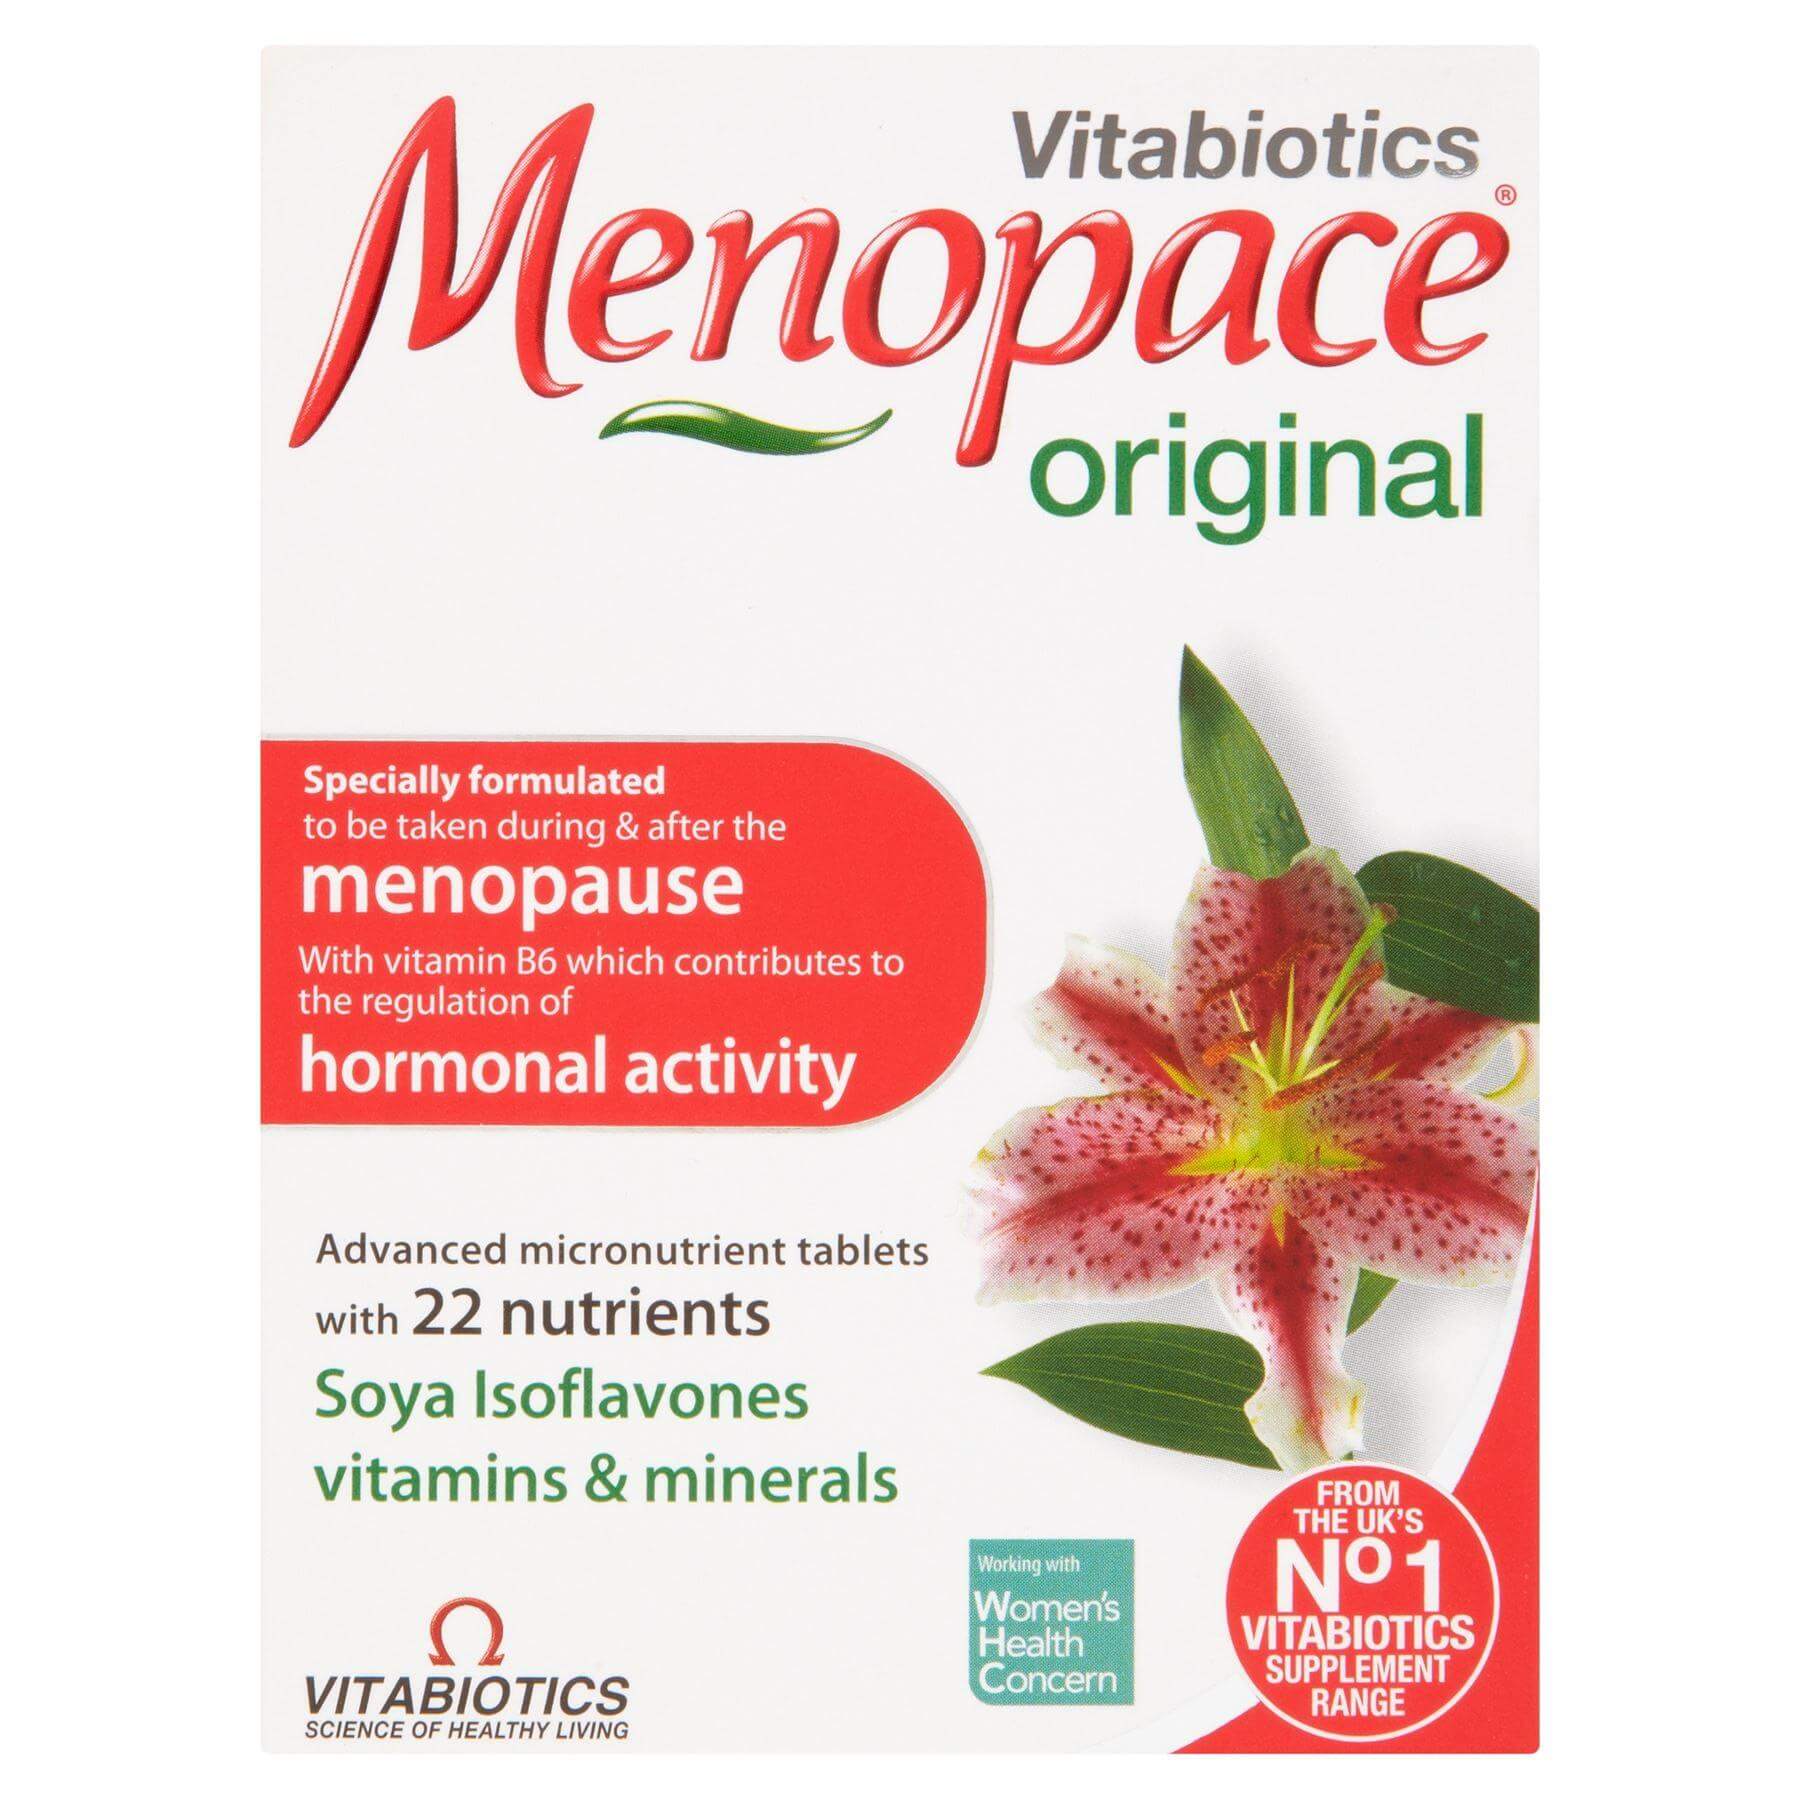 Менопейс плюс купить. Менопейс изофлавоны. Таблетки menopause Vitabiotics. Менопейс ориджинал. Менопейс фото.